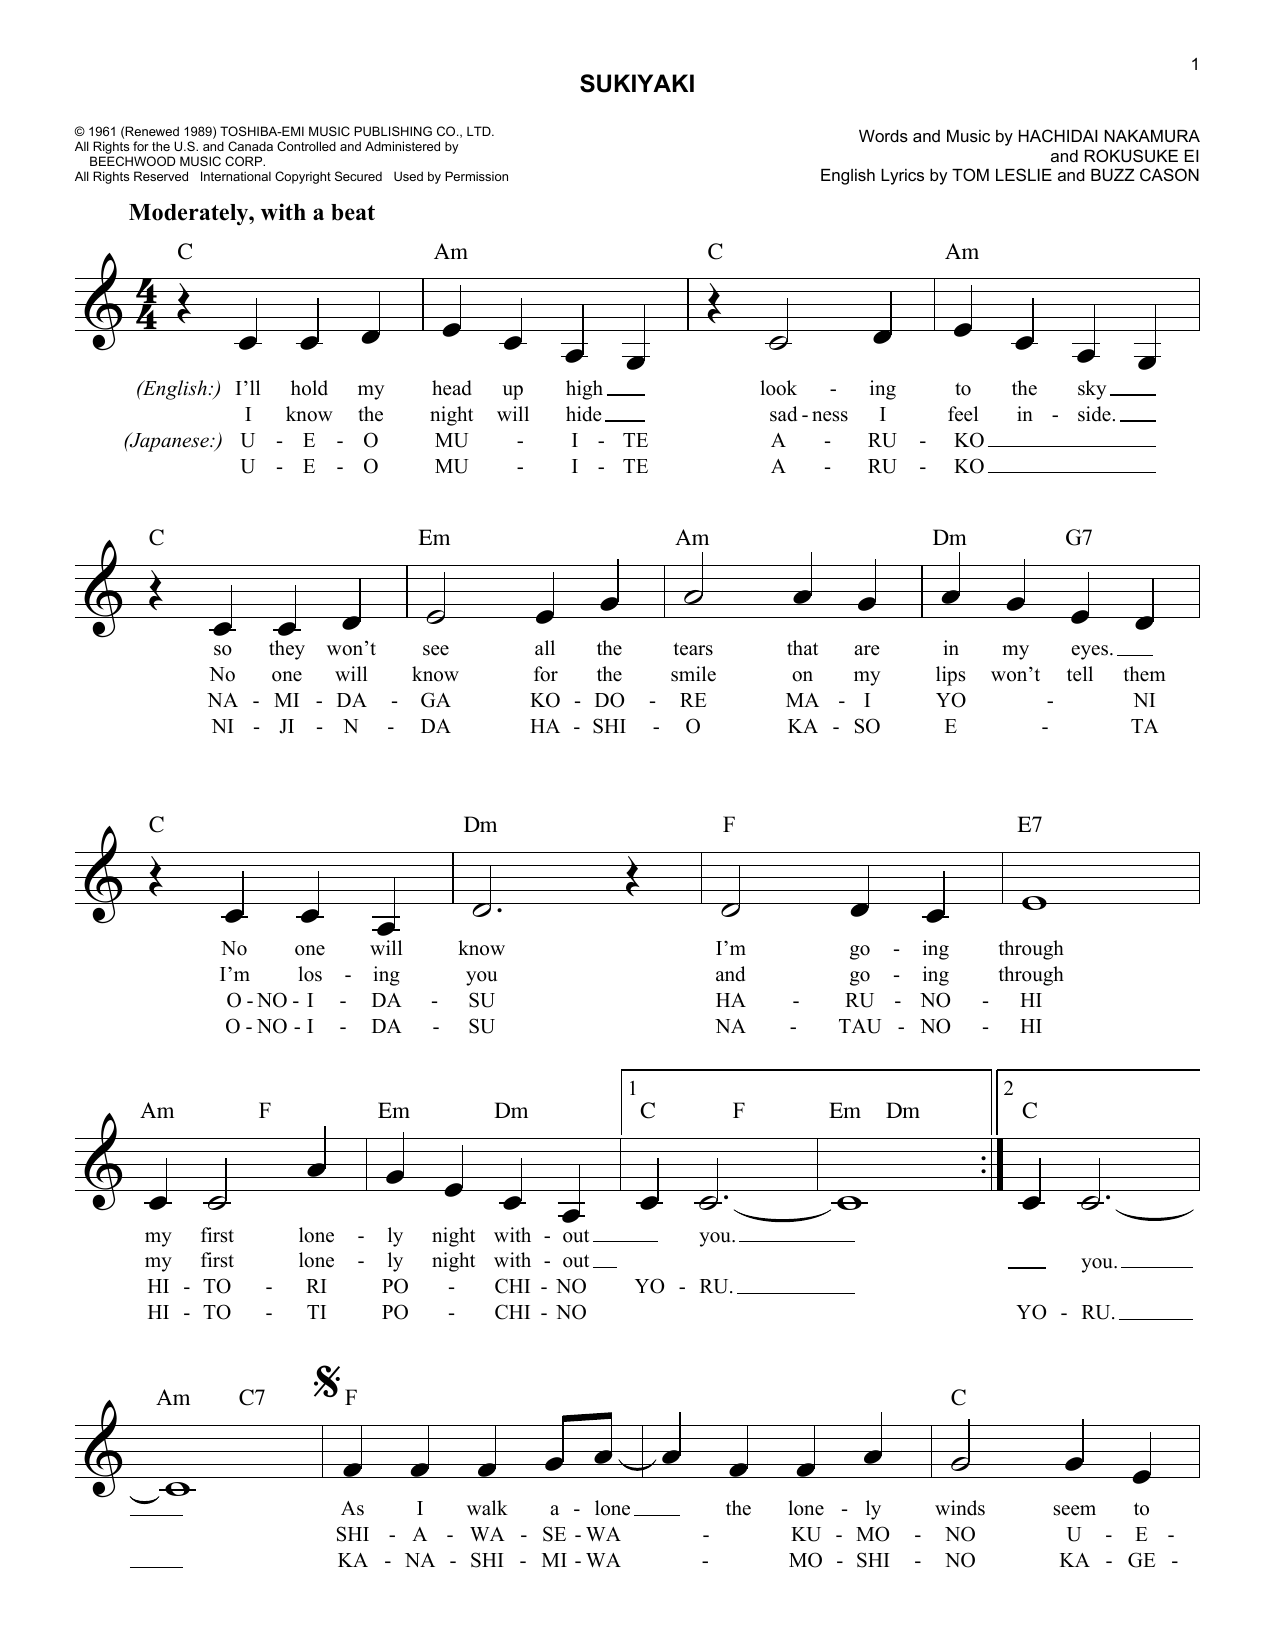 Download Kyu Sakamoto Sukiyaki Sheet Music and learn how to play Melody Line, Lyrics & Chords PDF digital score in minutes